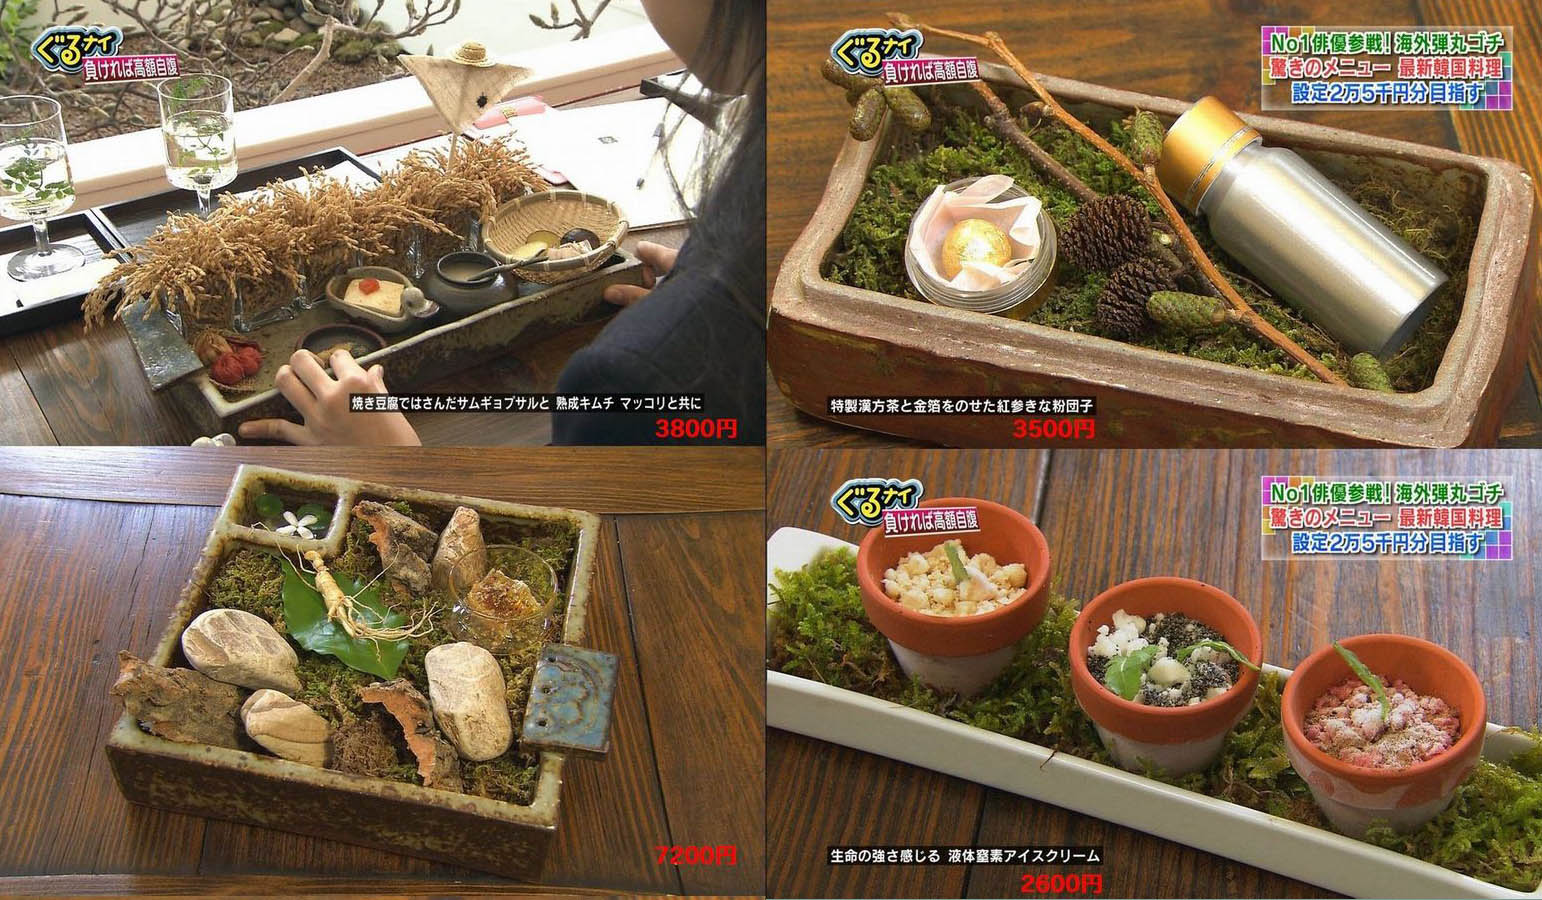 日本のテレビで紹介されたこの韓国料理はどこで食べられますか カイカイch 日韓交流掲示板サイト